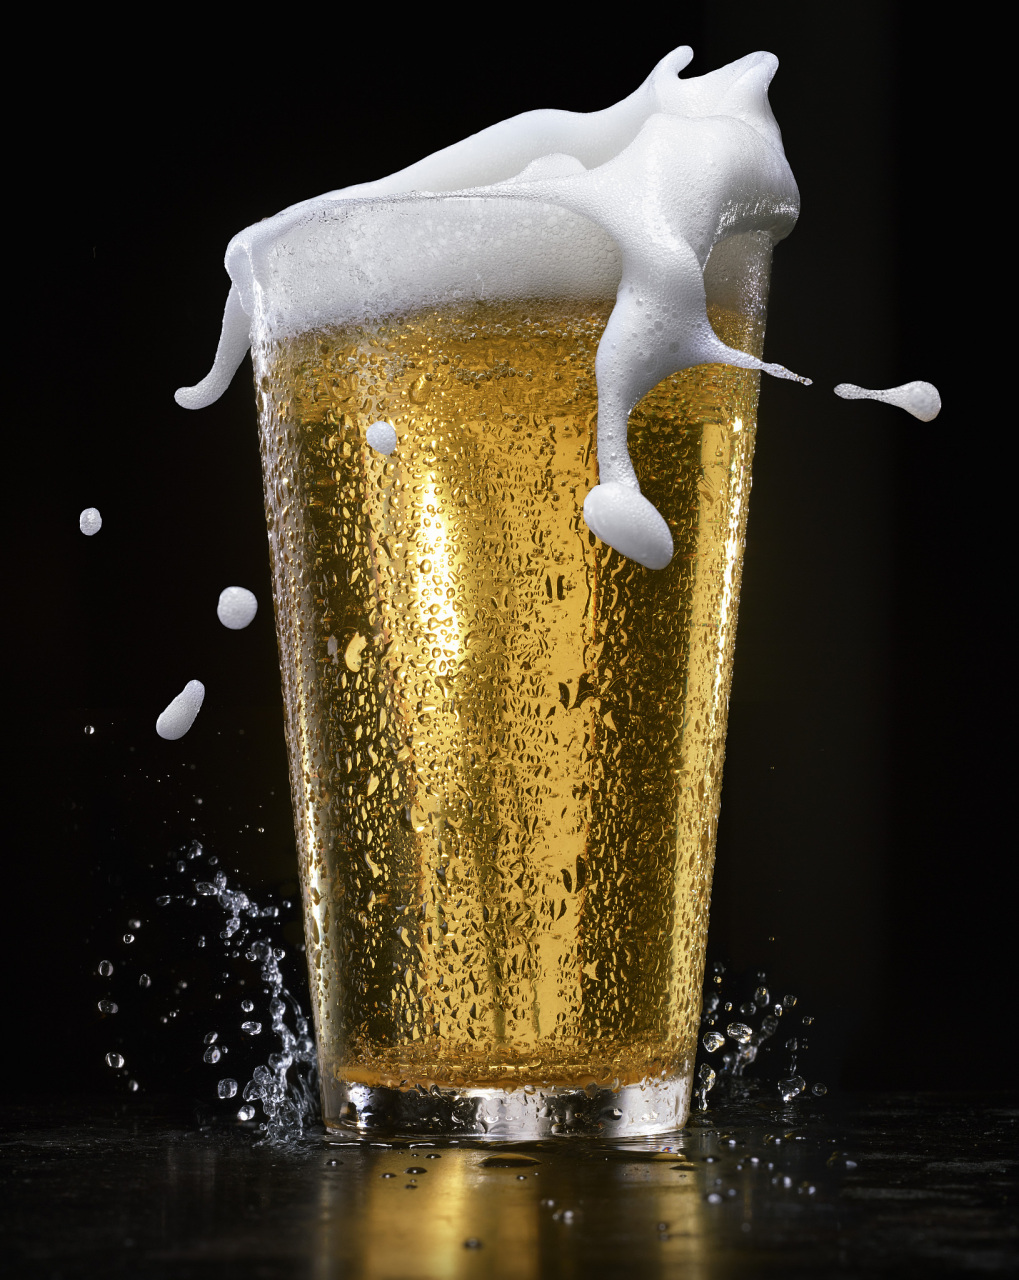 《情感语录之啤酒沫和爱》倒啤酒时上面有一层泡沫,看似庞大,抿一口全